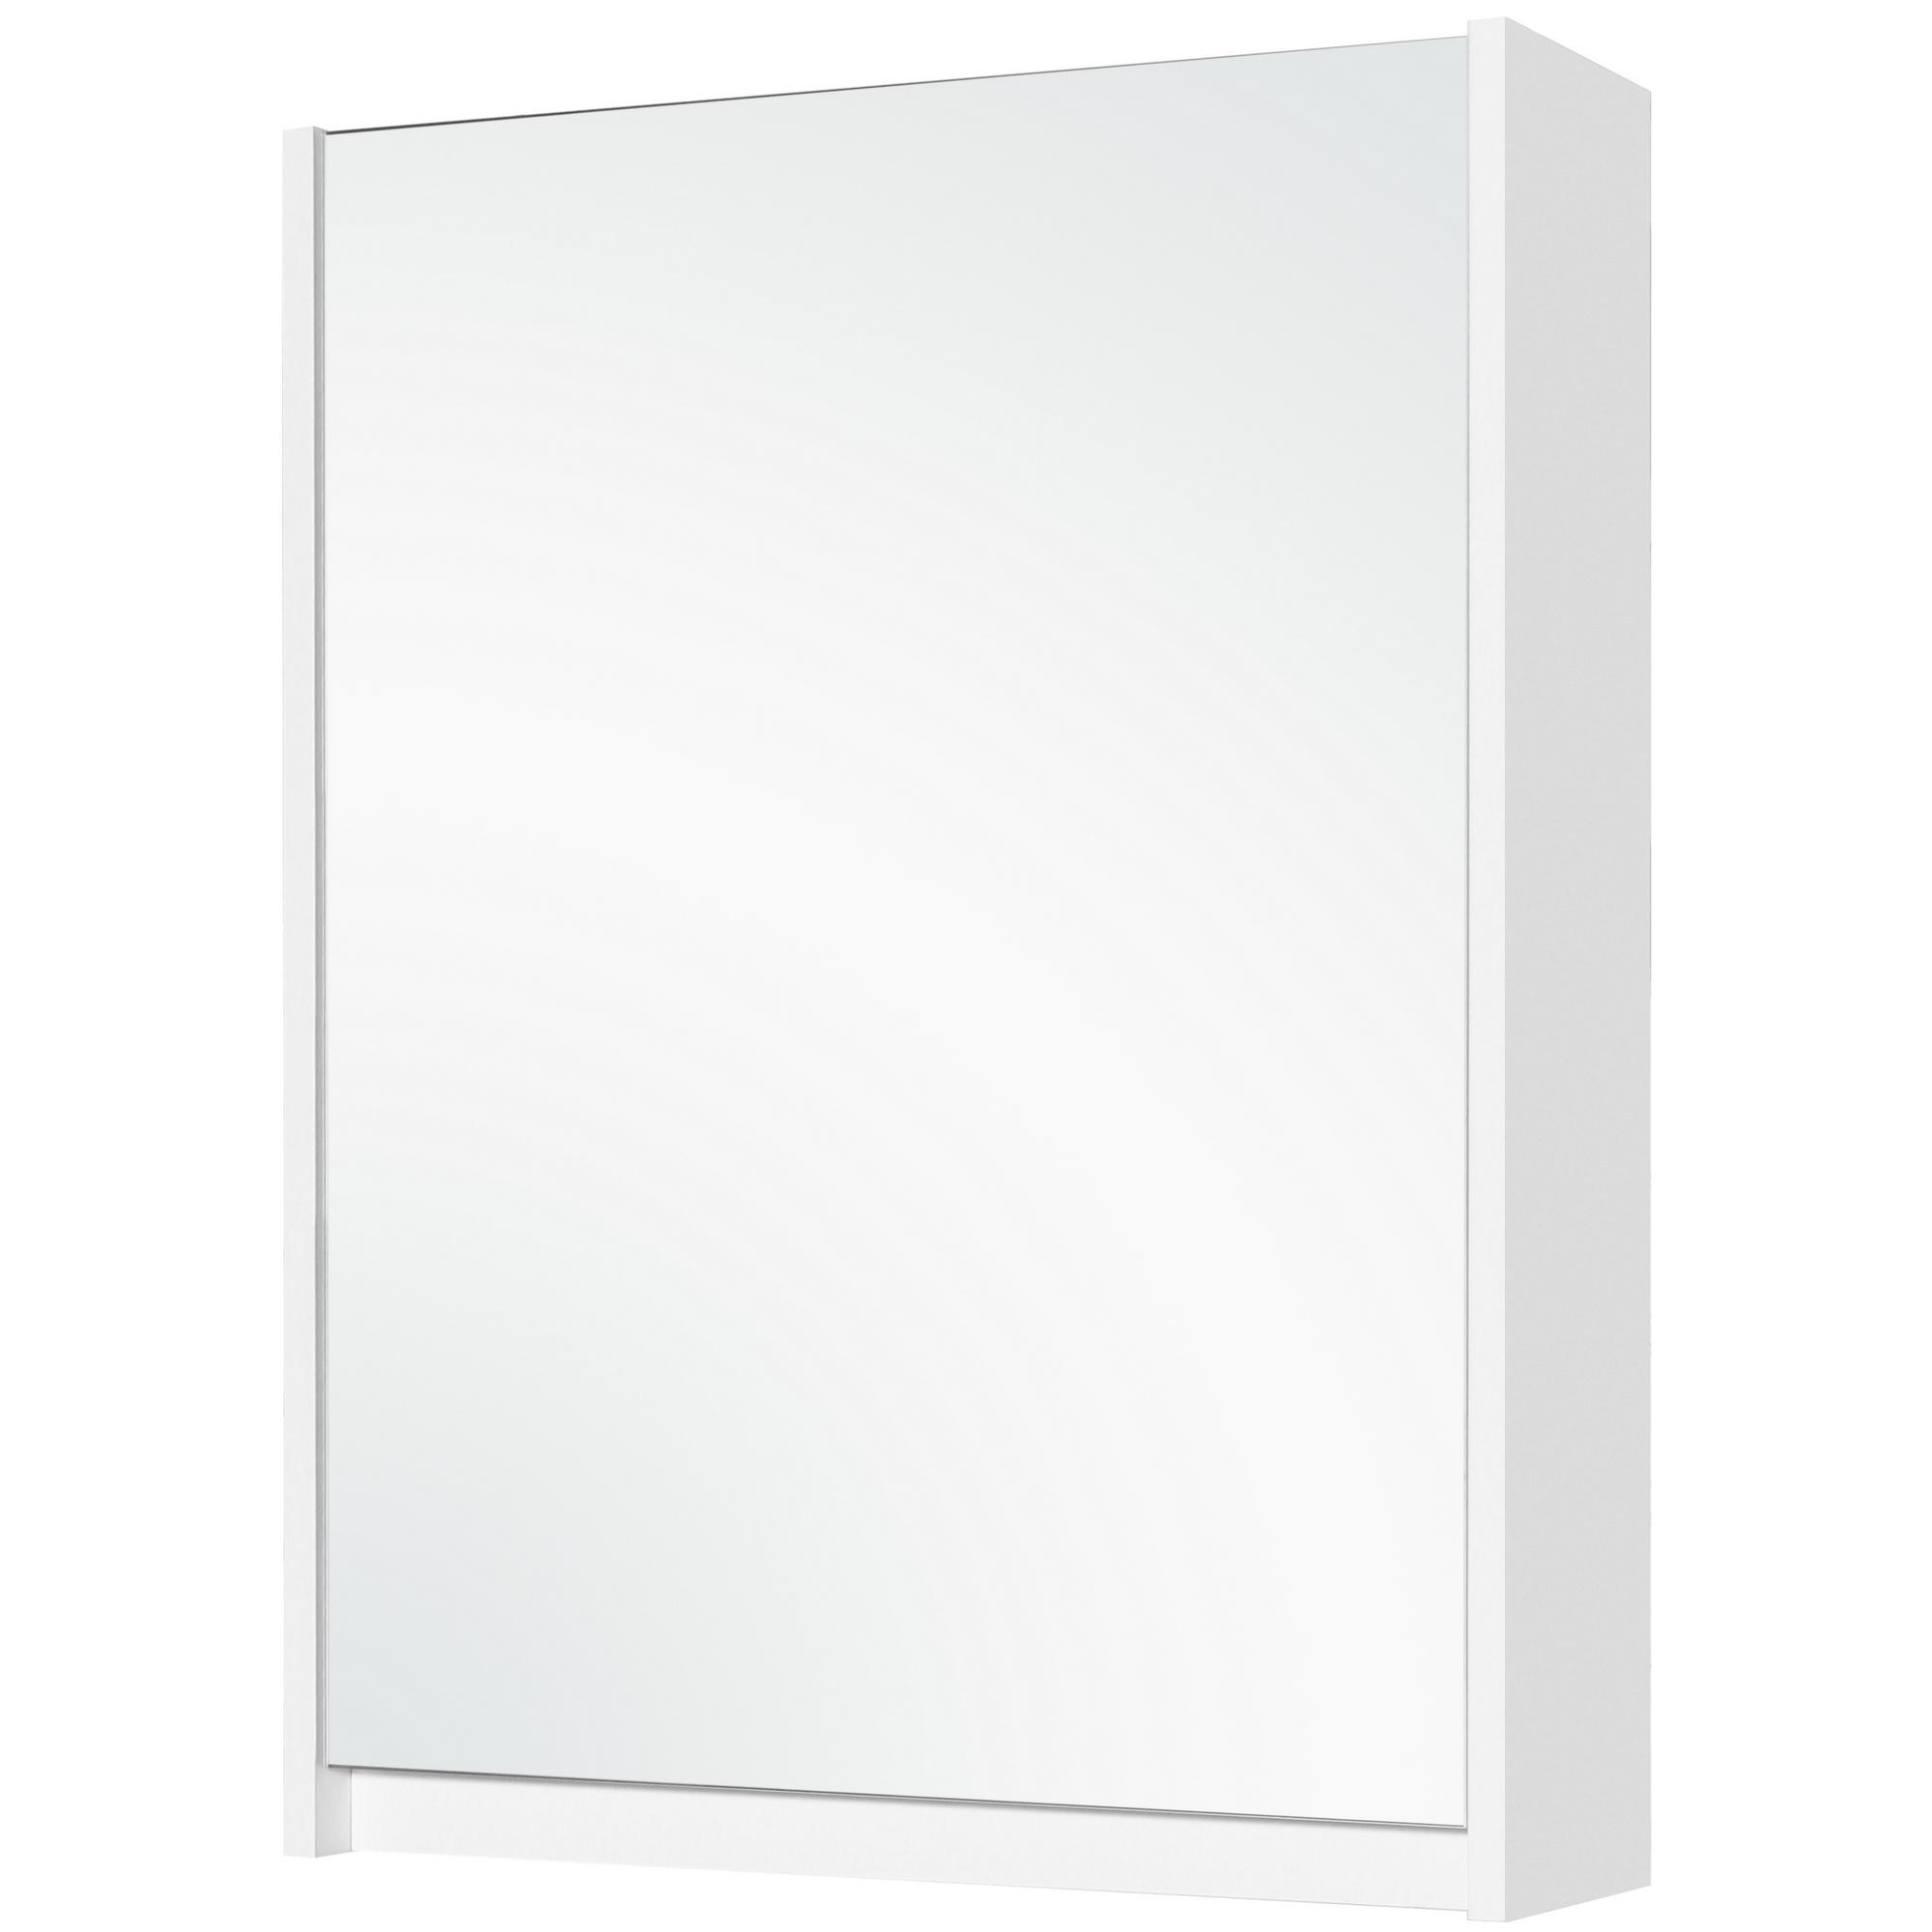 Леруа мерлен шкаф для ванной. Шкаф зеркальный Квадро 60. Зеркало-шкаф Квадро 60 см бел/Водолей. Зеркало Грейс 60см. Шкаф зеркальный сведен 80.